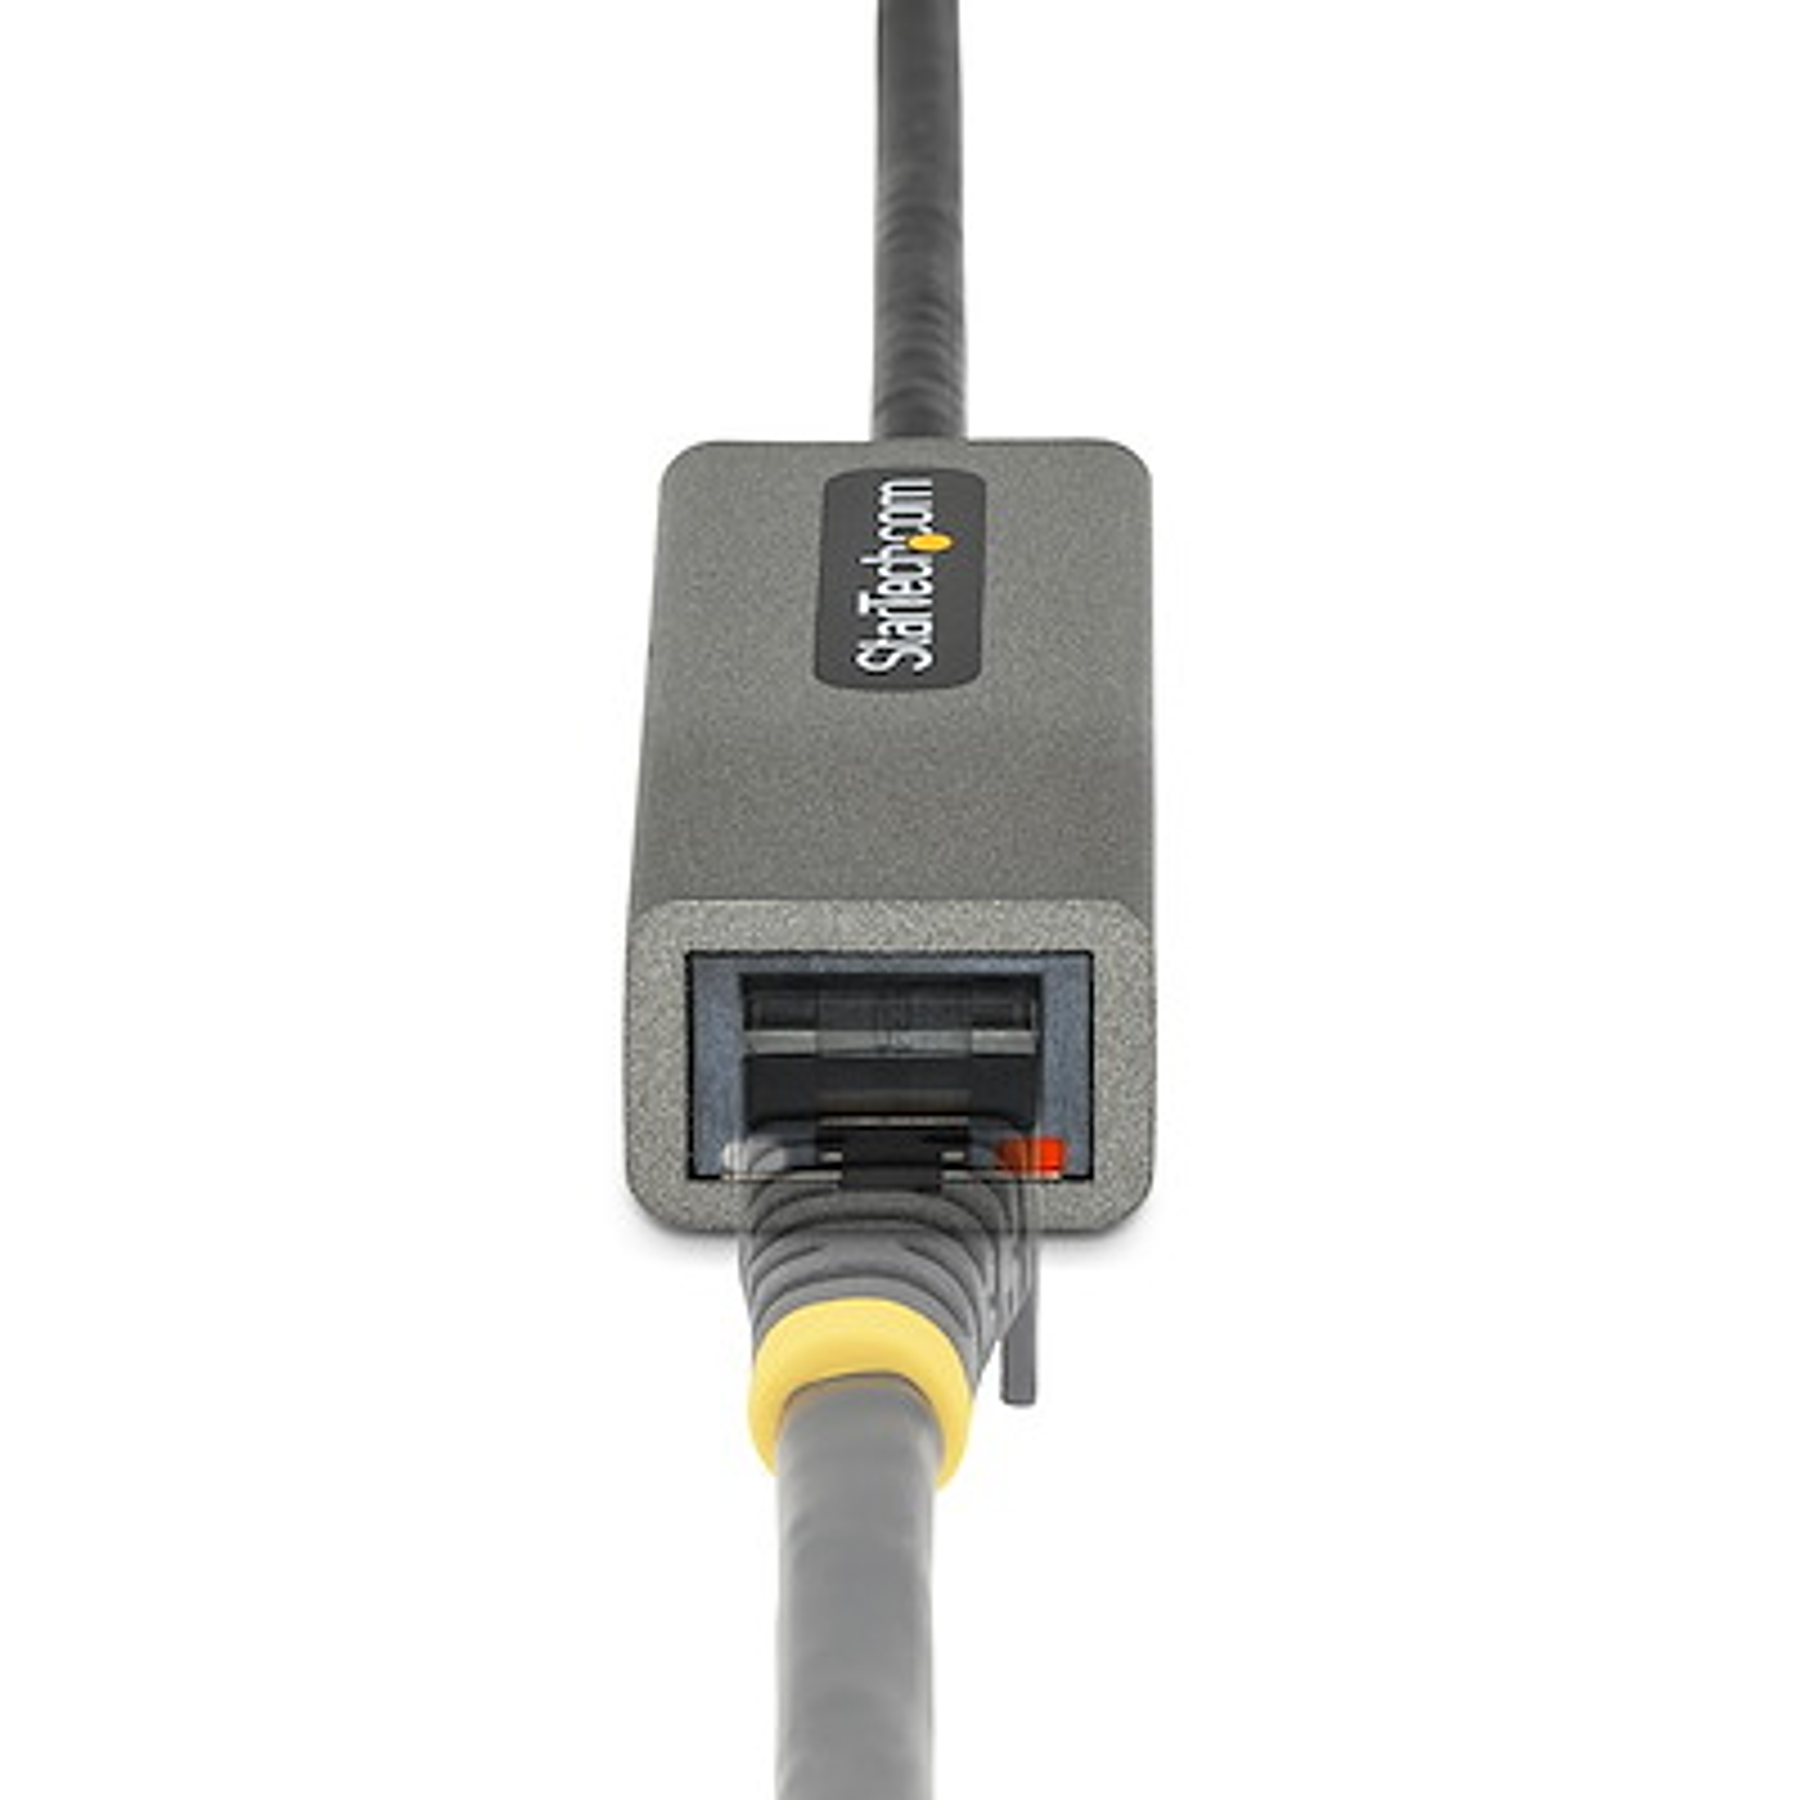 StarTech Adaptador USB 3.0 a Ethernet Gigabit  10/100/1000 30cm  Sin Controladores